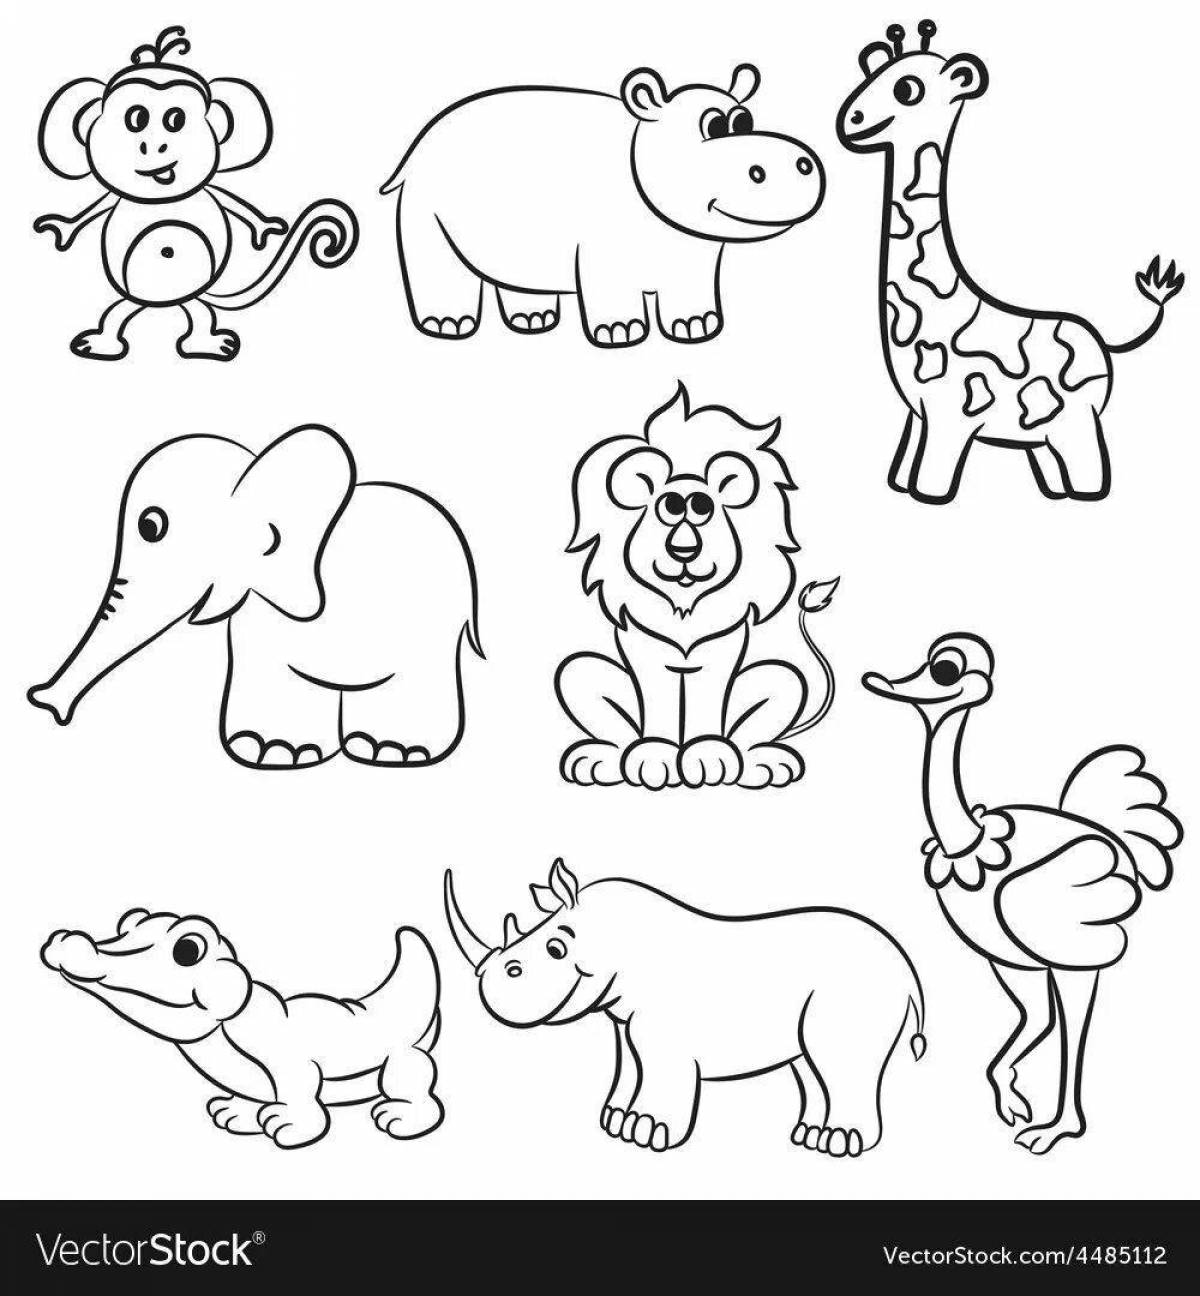 Цветная раскраска африканских животных для детей 3-4 лет